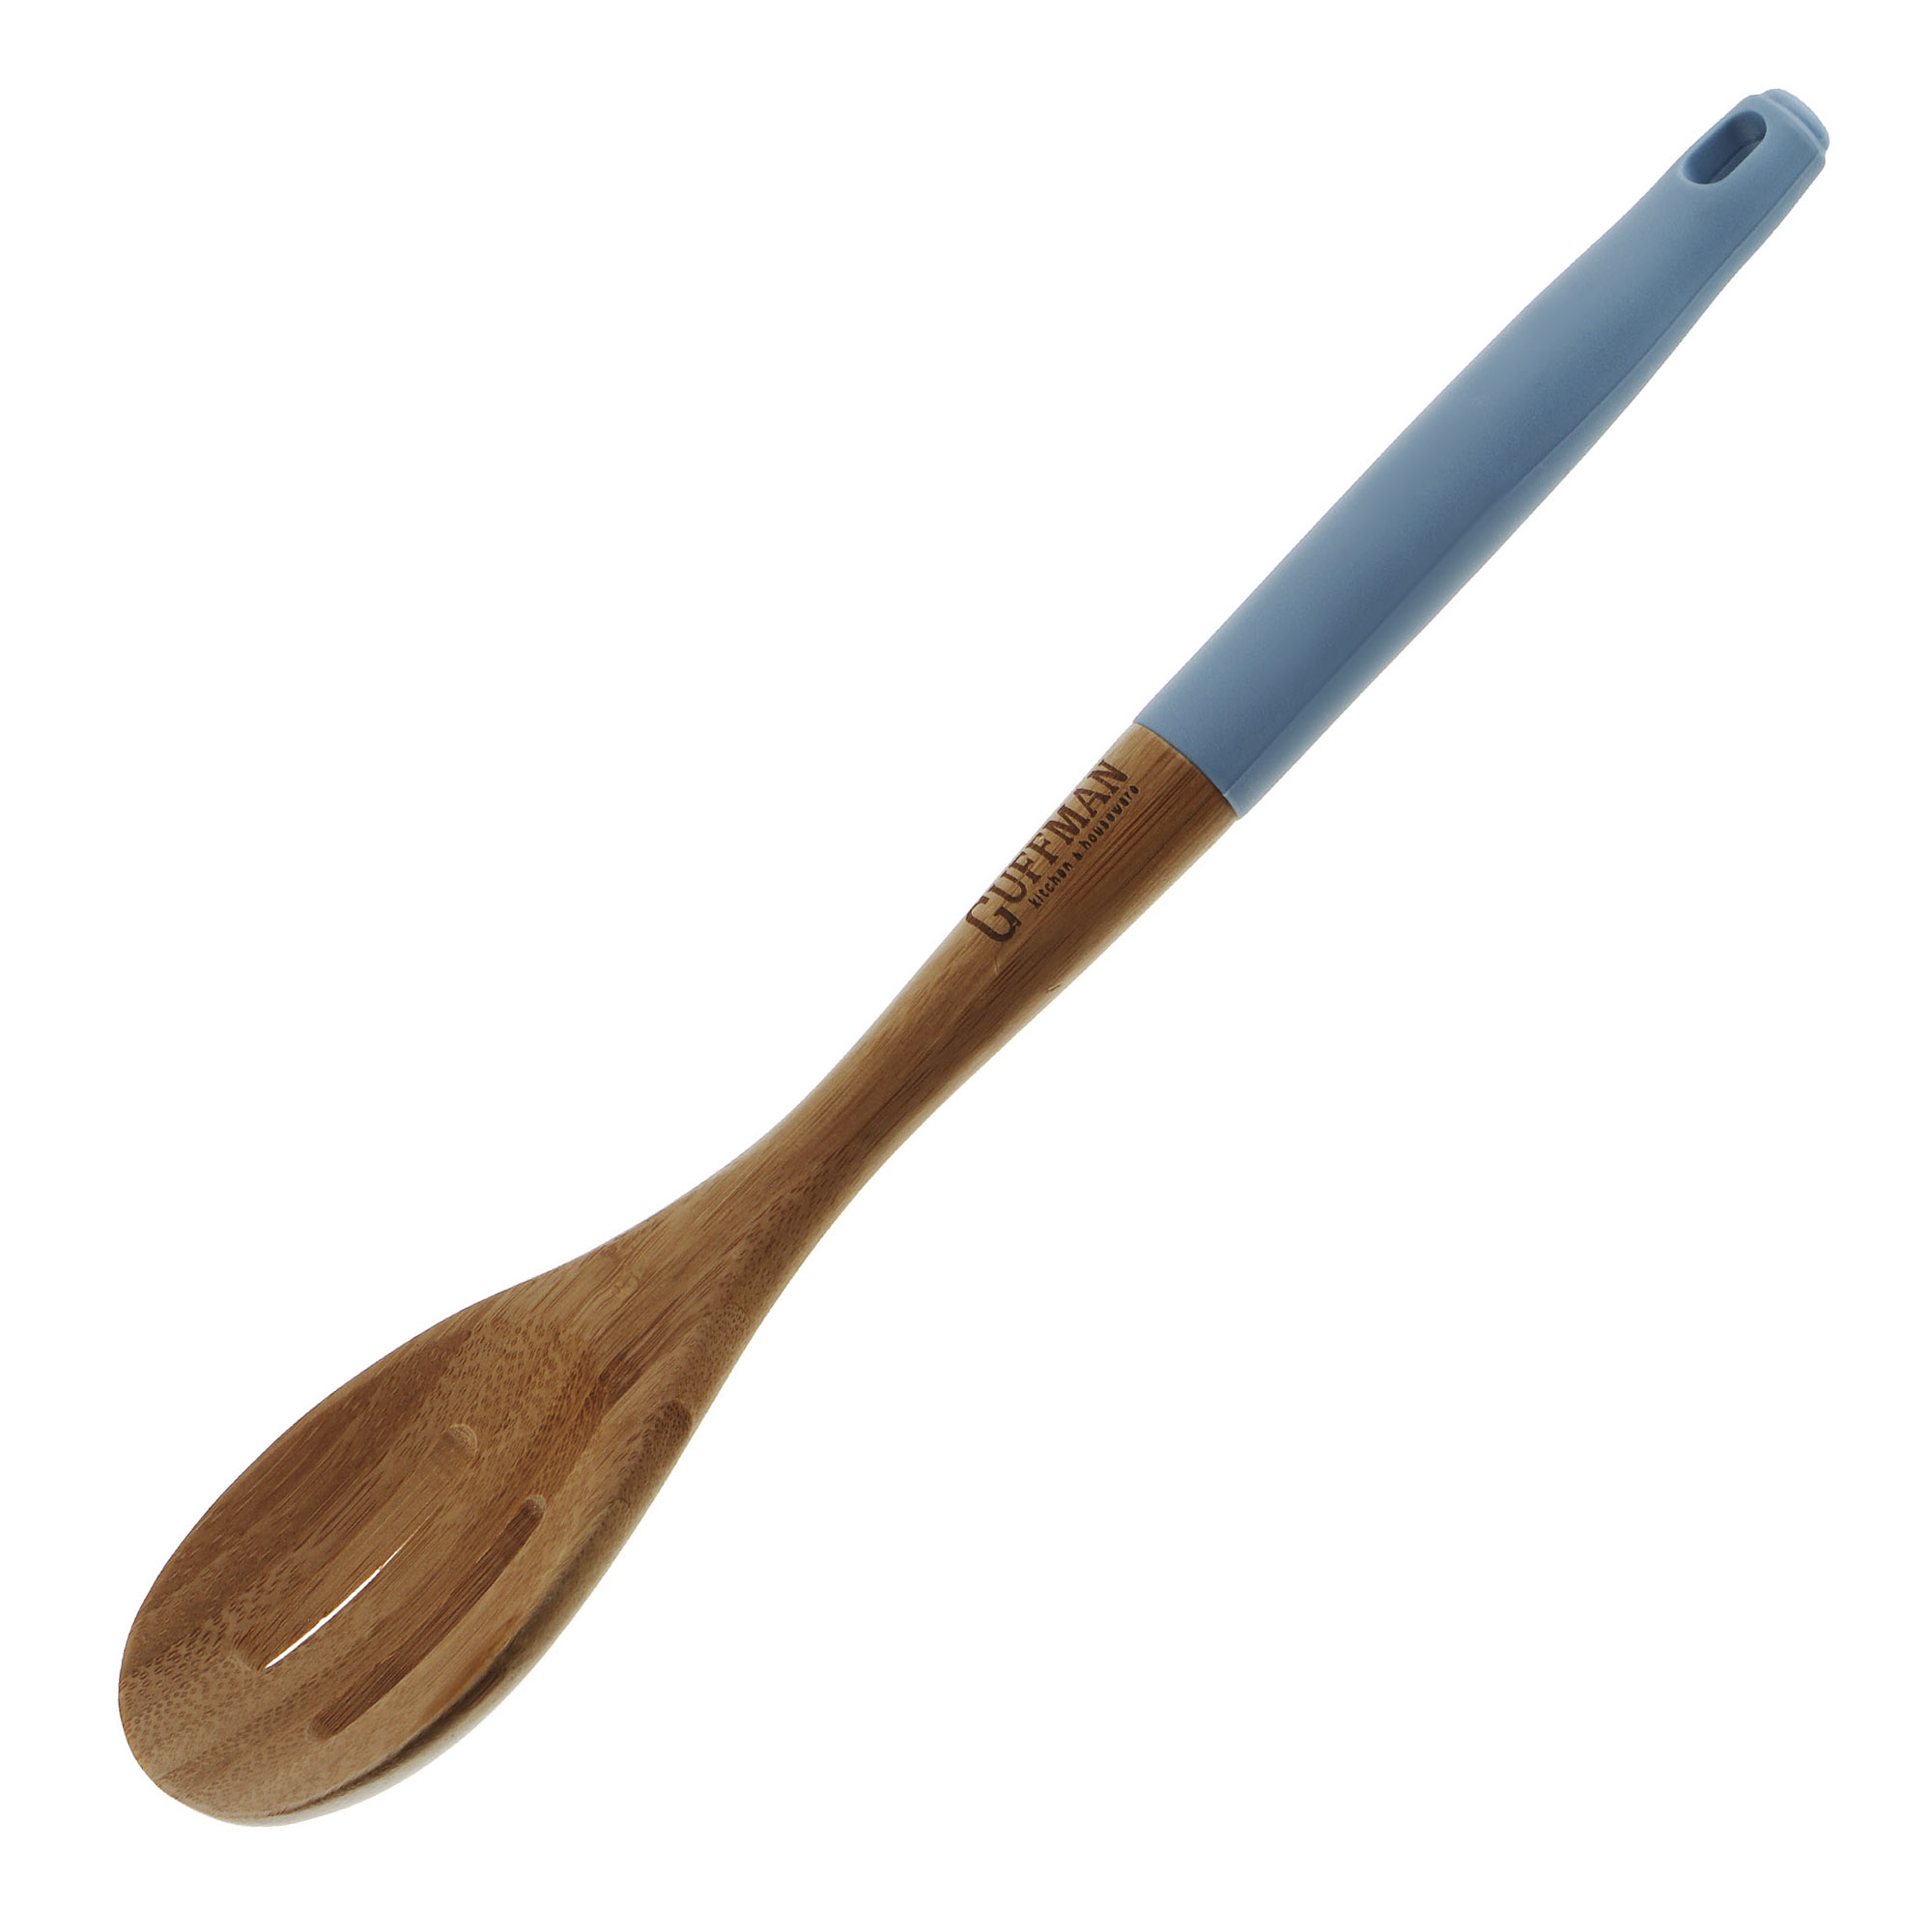 Ложка бамбуковая Guffman с прорезями 36 см голубая ложка бамбуковая guffman для спагетти 36 см голубая